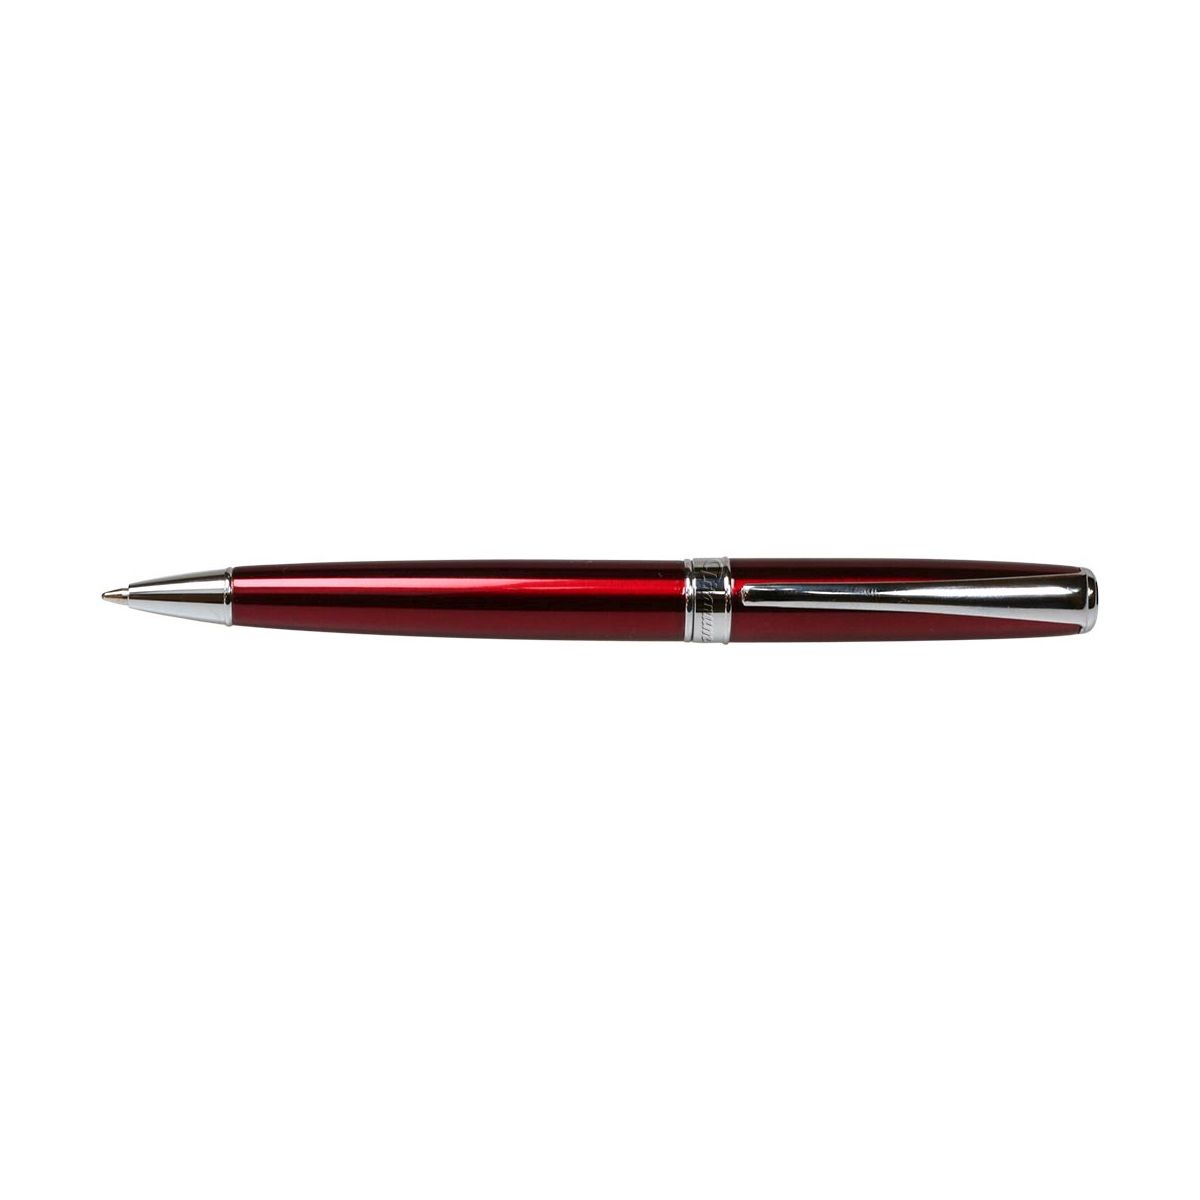 Długopis obrotowy 30B400L Titanum metalowy czerwona obudowa srebrne wykończenie niebieski wkład 0,7 mm